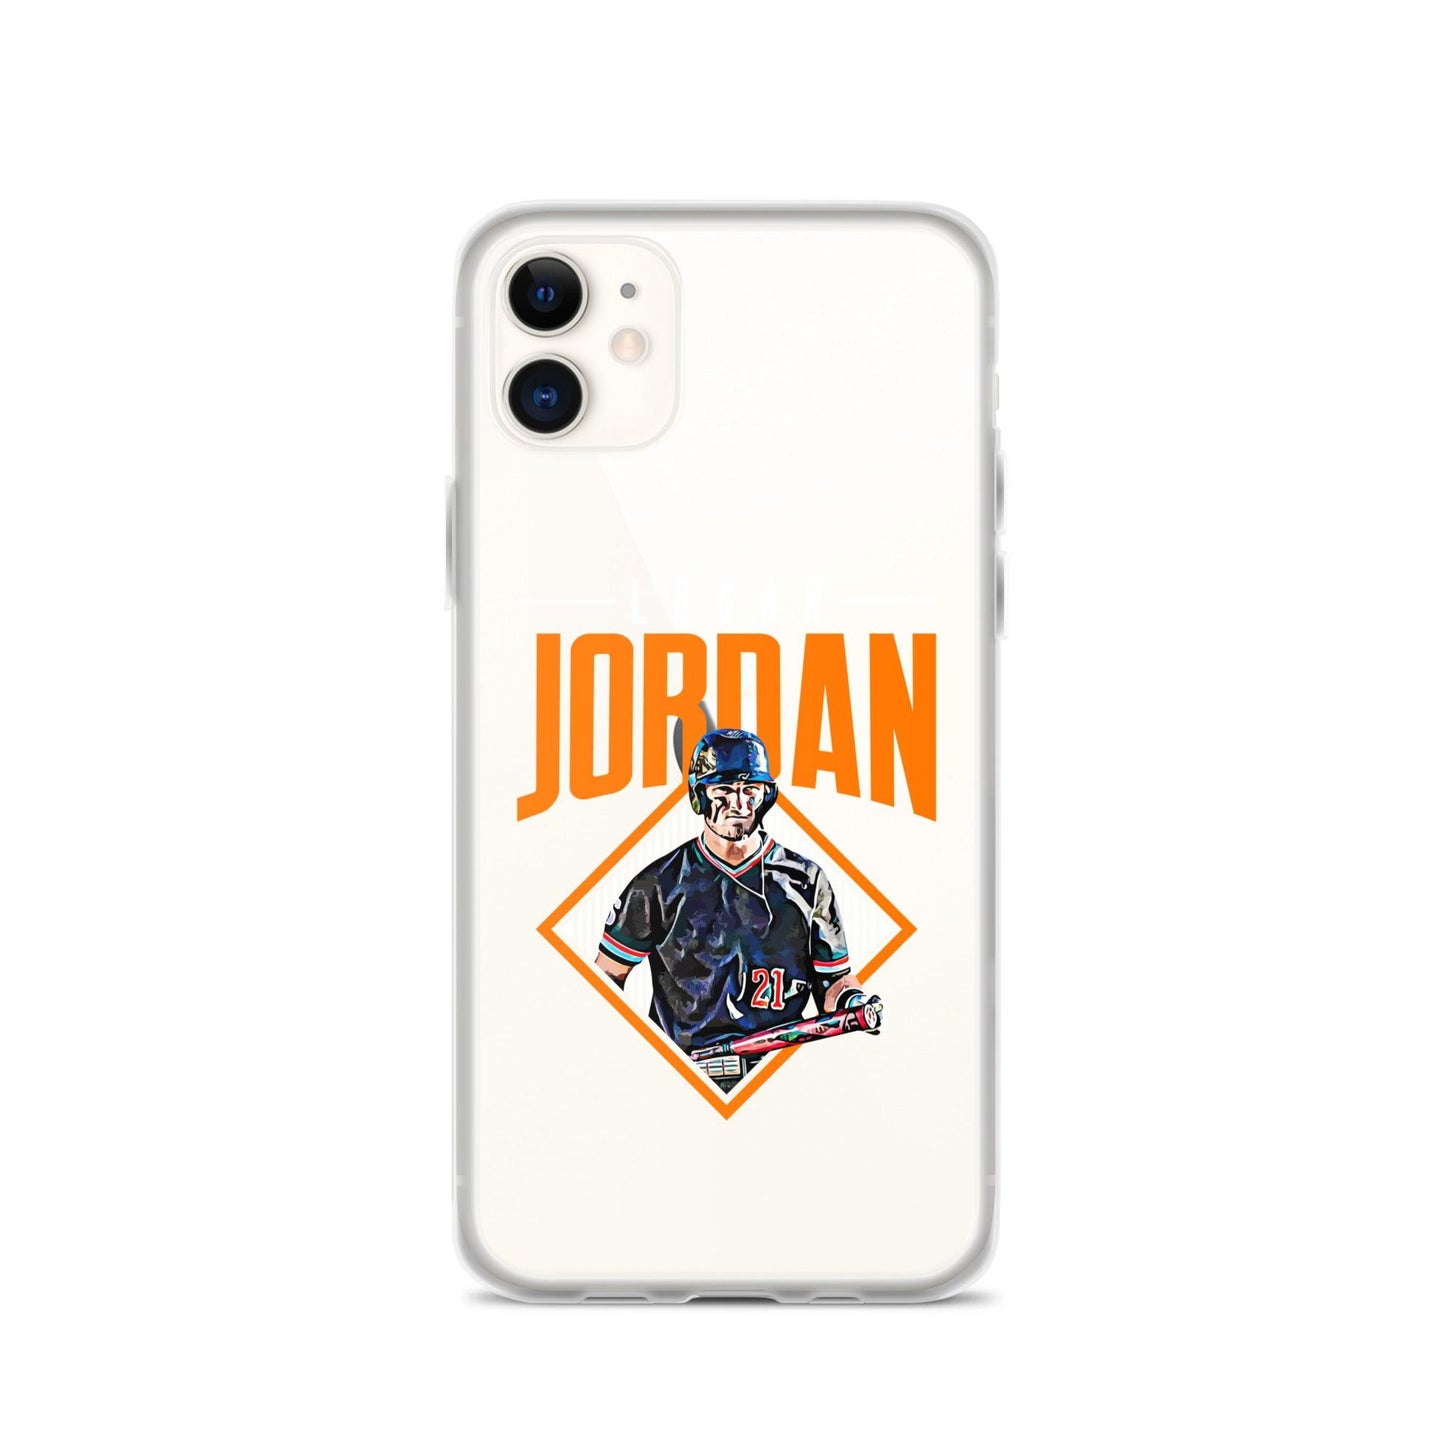 Logan Jordan "Grand Slam" iPhone Case - Fan Arch